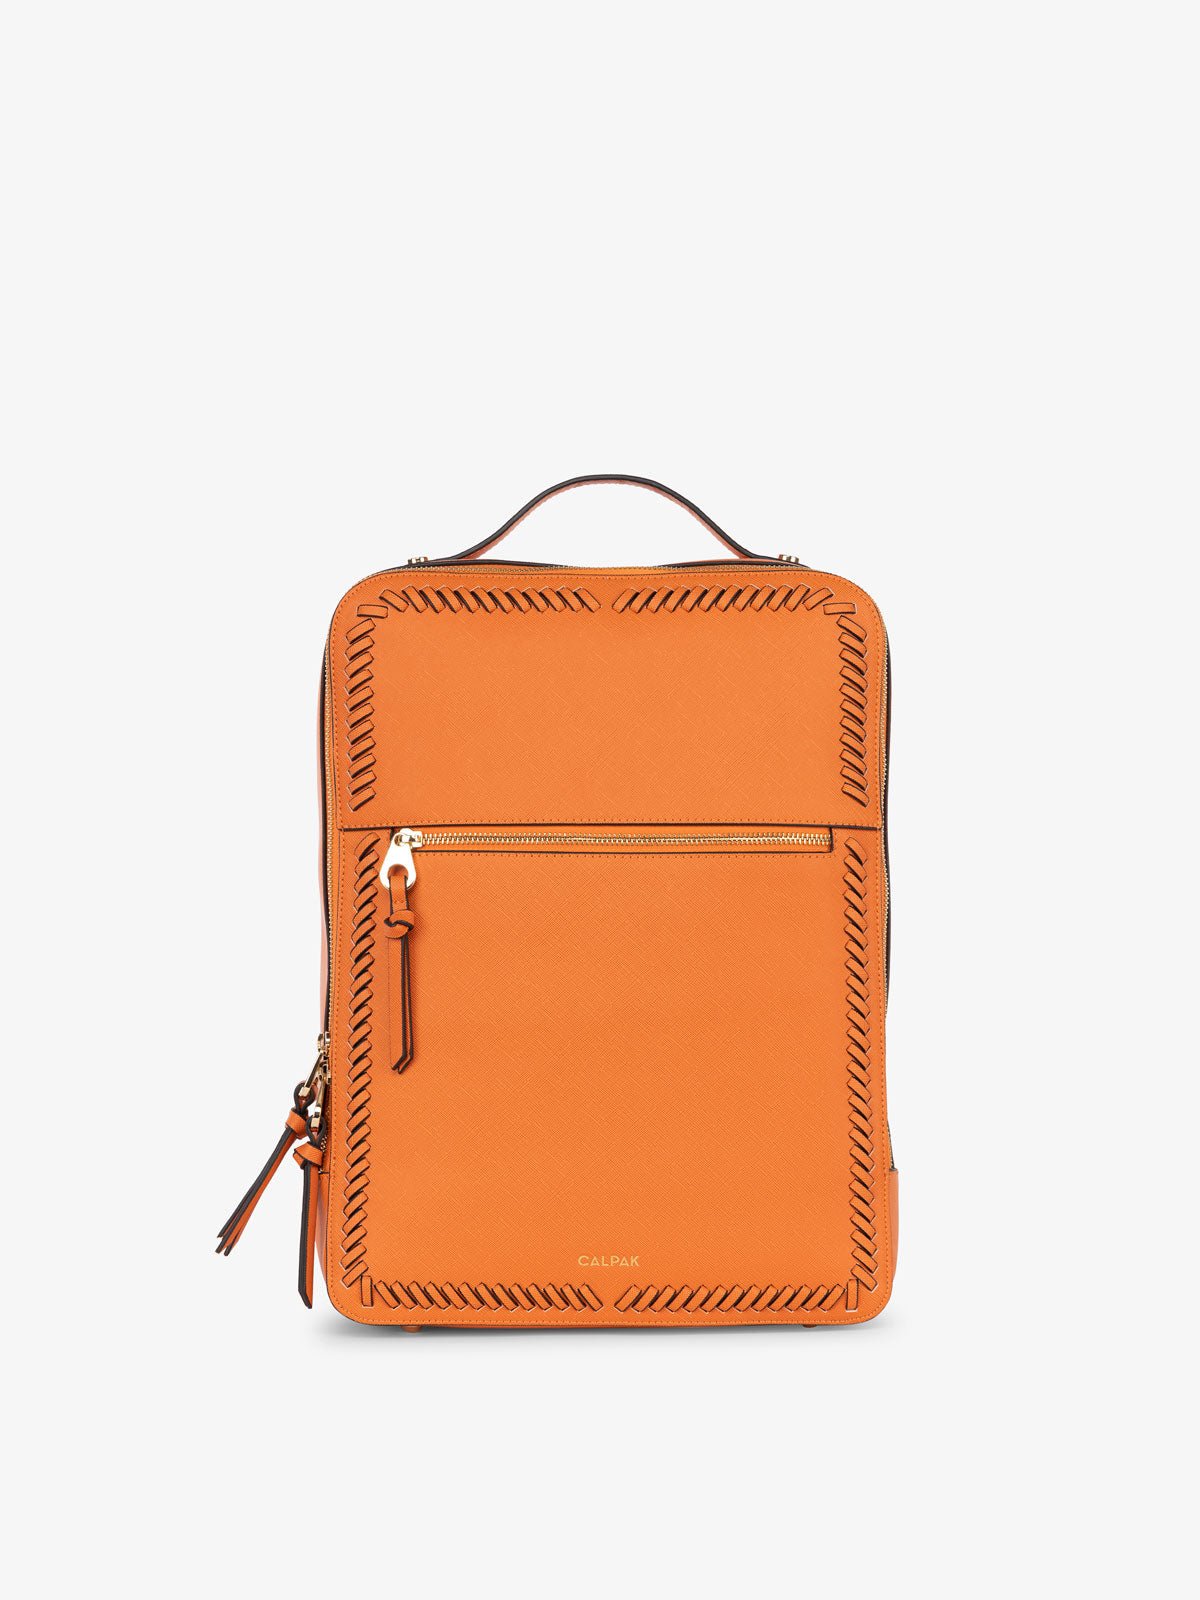 CALPAK Kaya laptop backpack in orange papaya